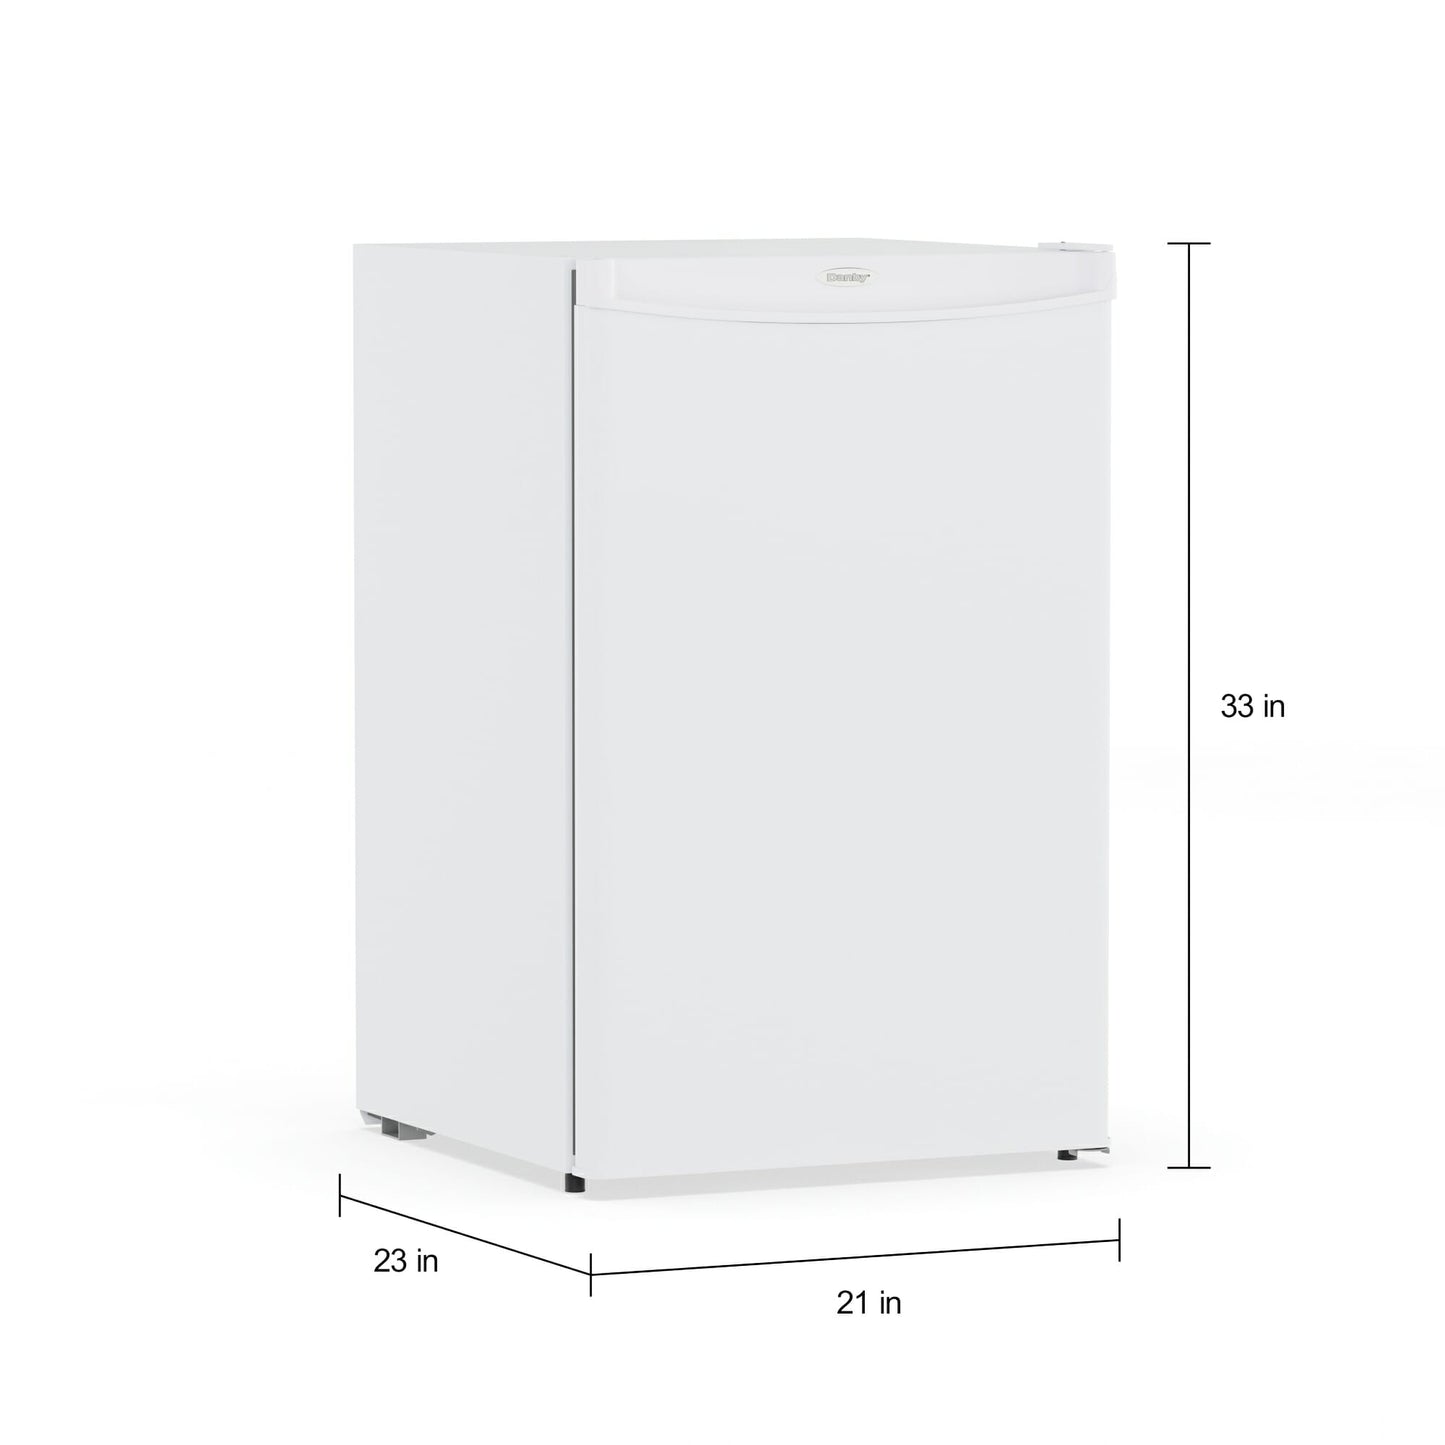 Danby 3.2 cu. ft. Upright Freezer in White - DUFM032A3WDB-3